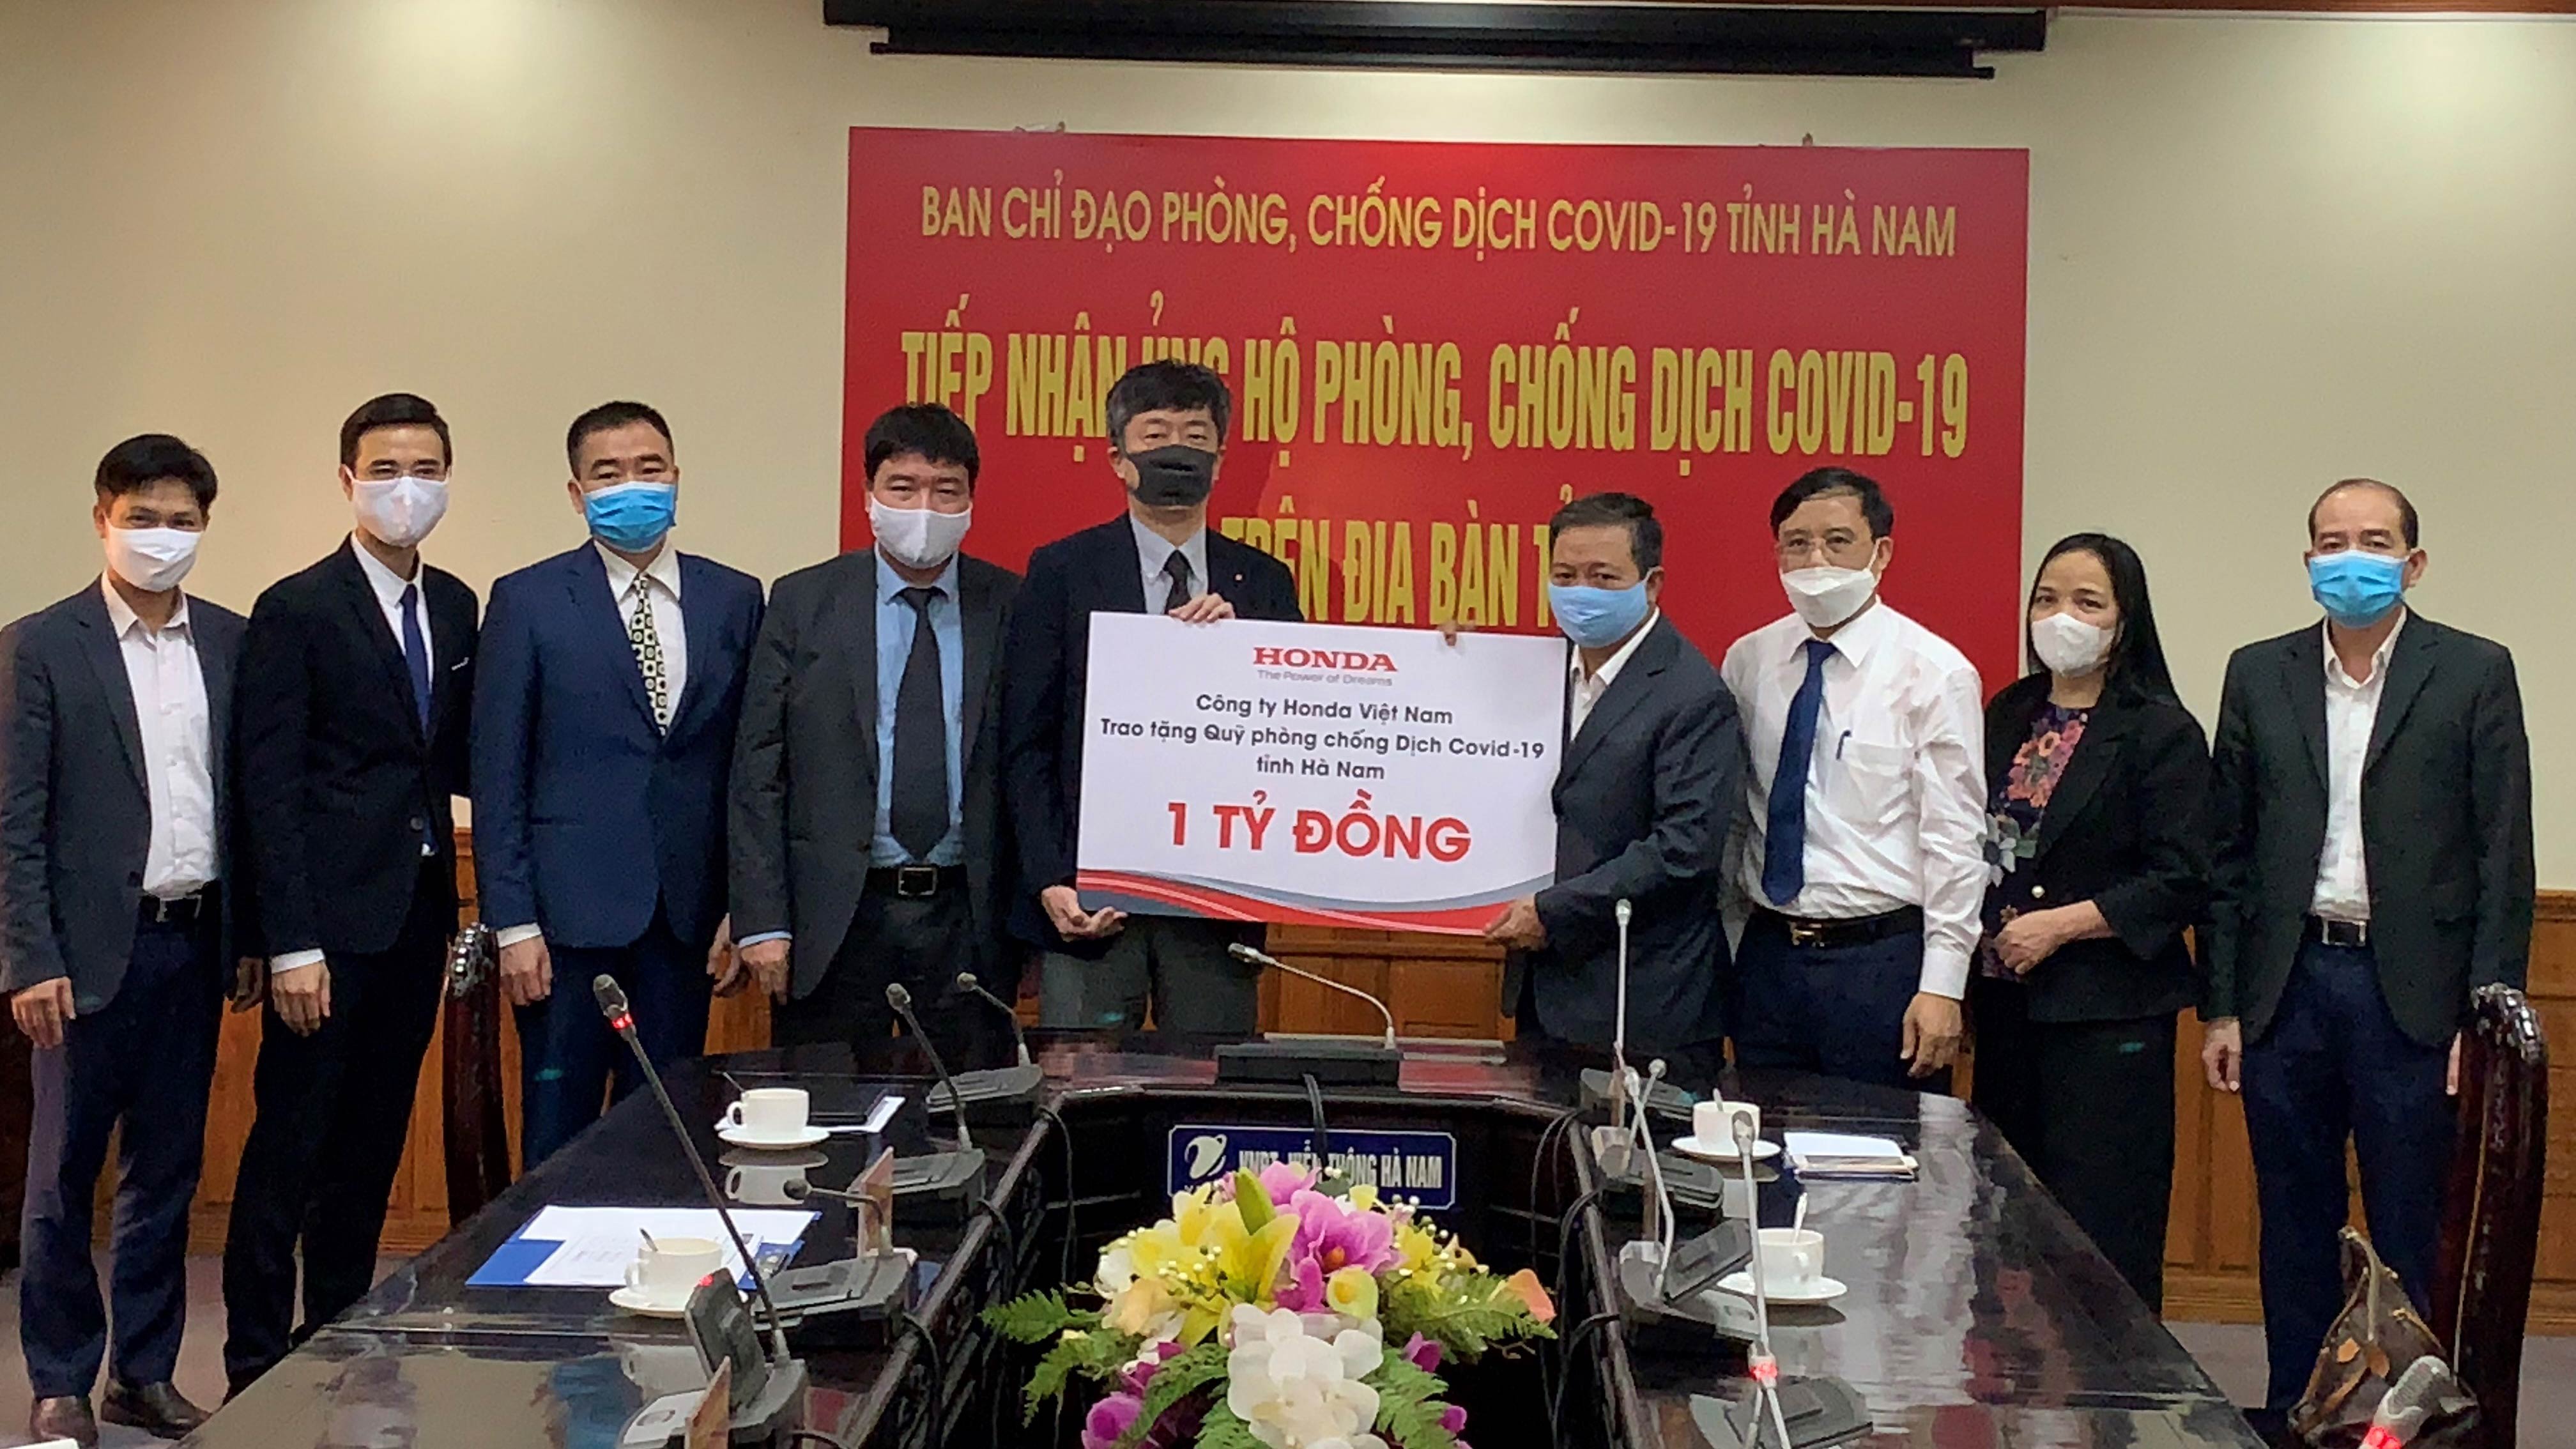 Honda Việt Nam ủng hộ 1 tỷ đồng hỗ trợ chống dịch Covid-19 tại Hà Nam